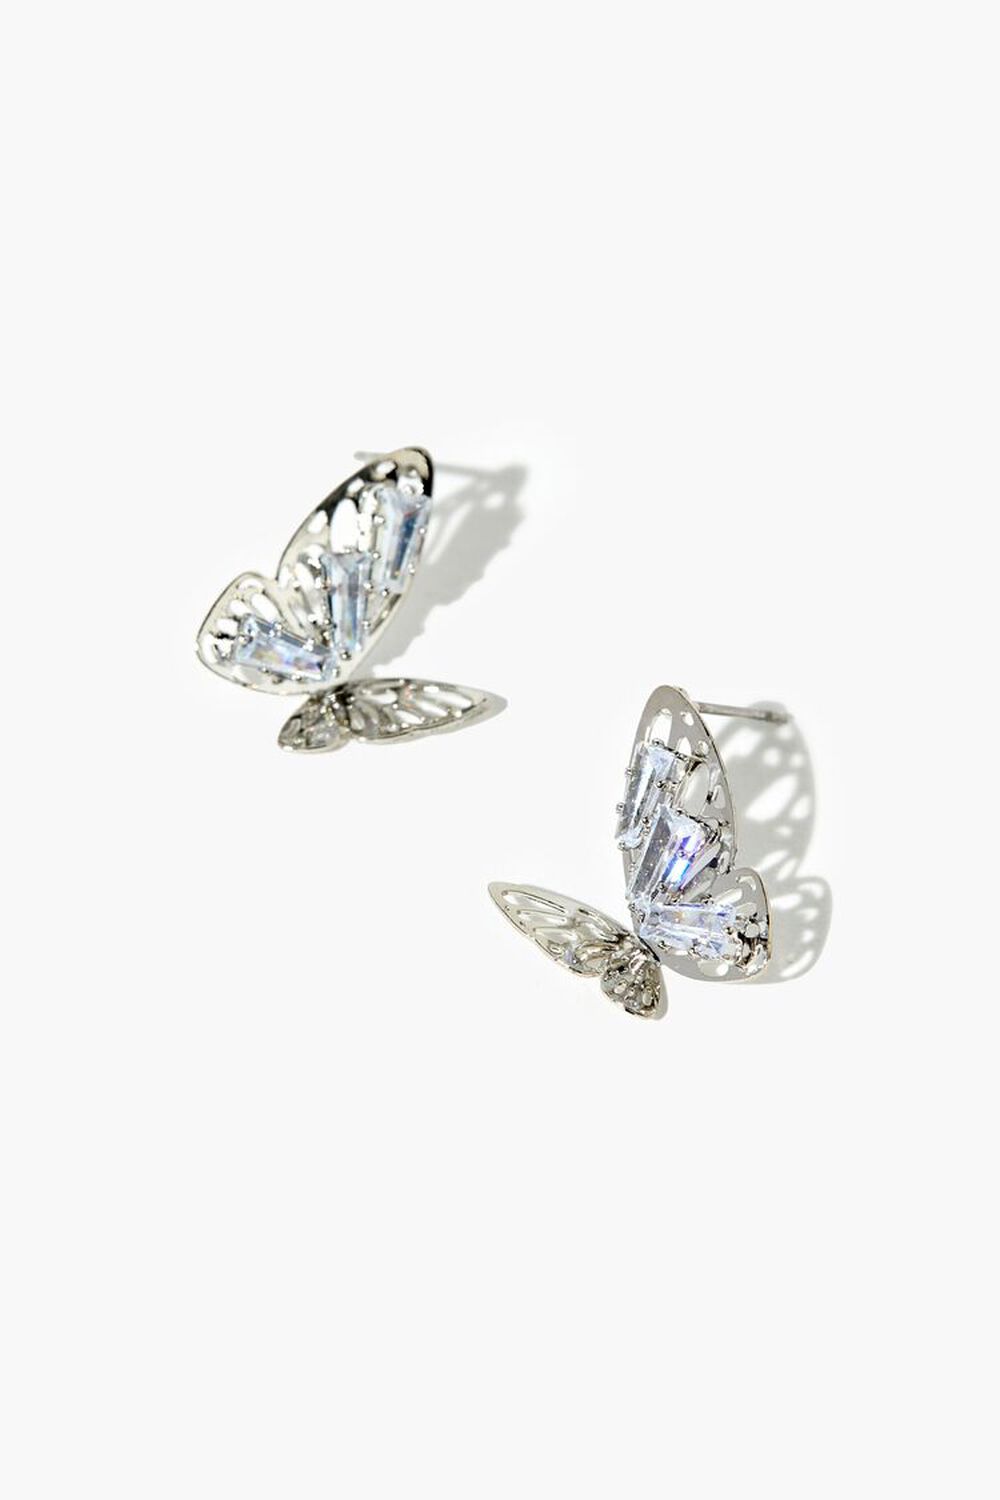 SILVER/CLEAR Butterfly Faux Gem Stud Earrings, image 1